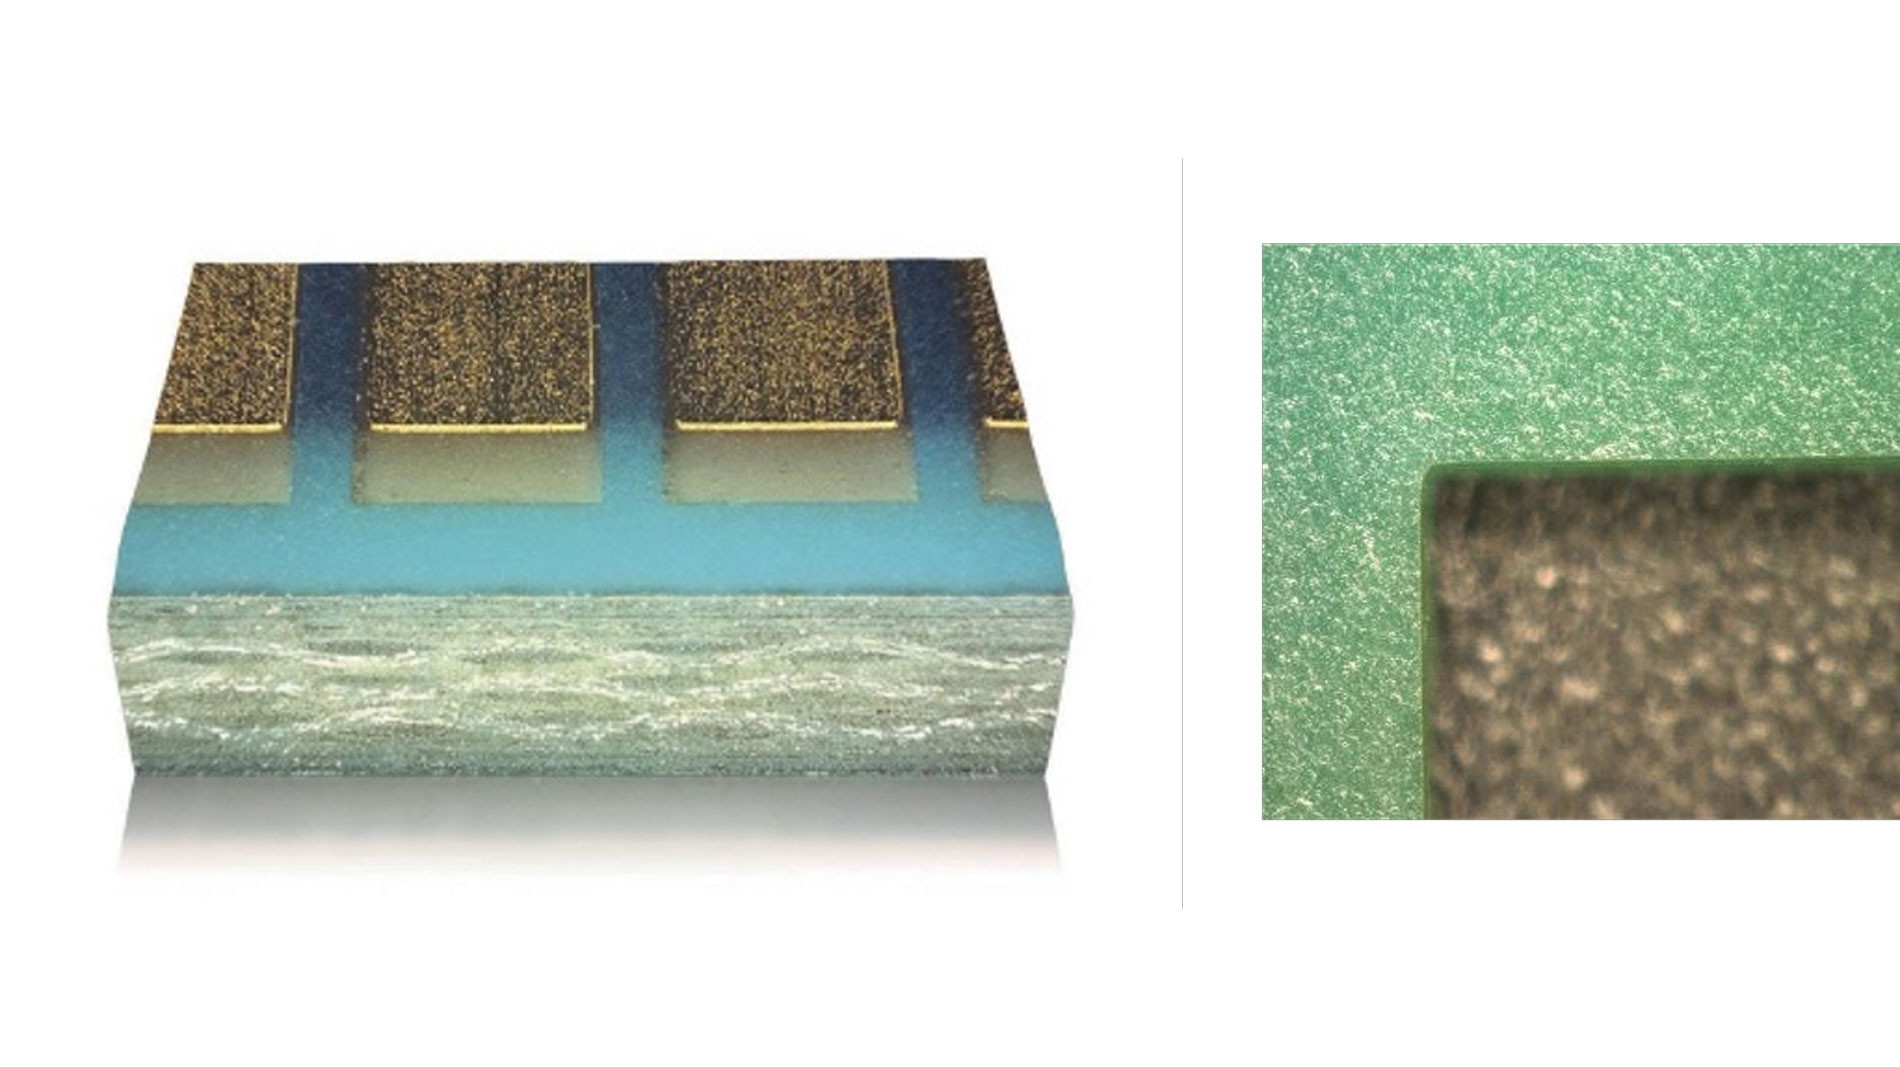 Bild 2: Technisch saubere Schnittkanten mit der CleanCut-Technologie von LPKF (Bild: SmartRep GmbH)